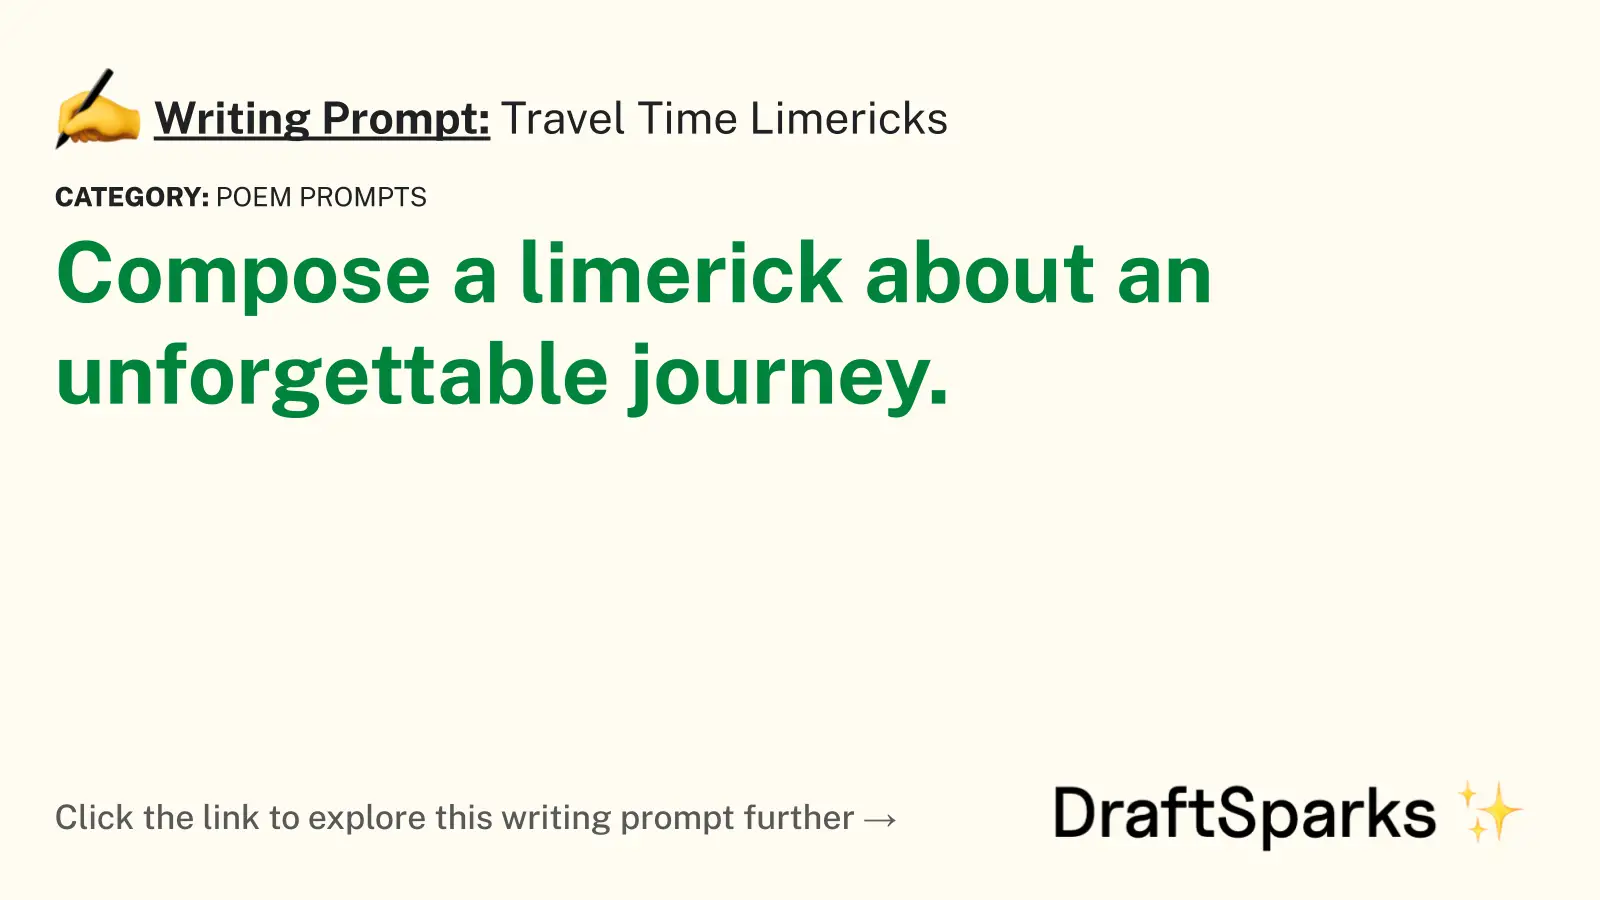 Travel Time Limericks